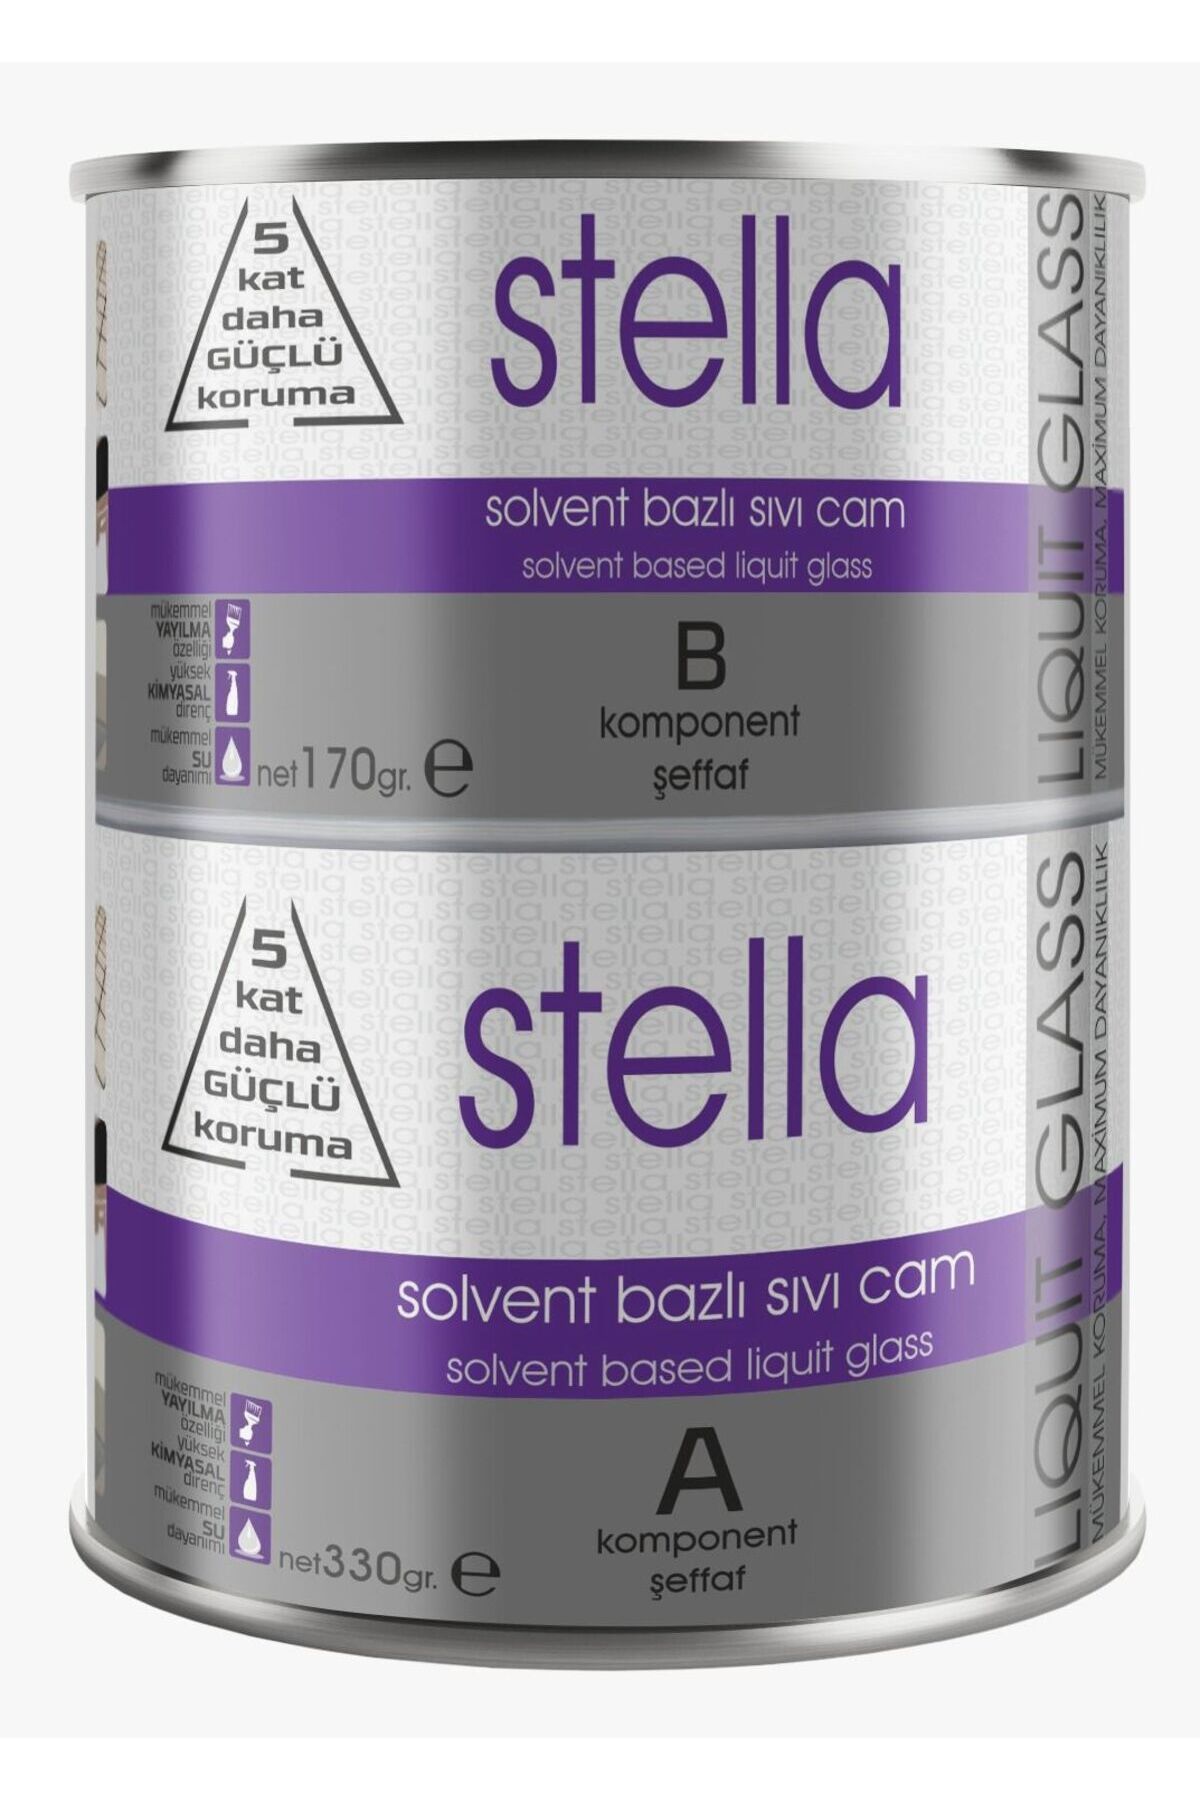 Stella Solvent Bazlı Sıvı Cam Boya 500Gr (330+170)